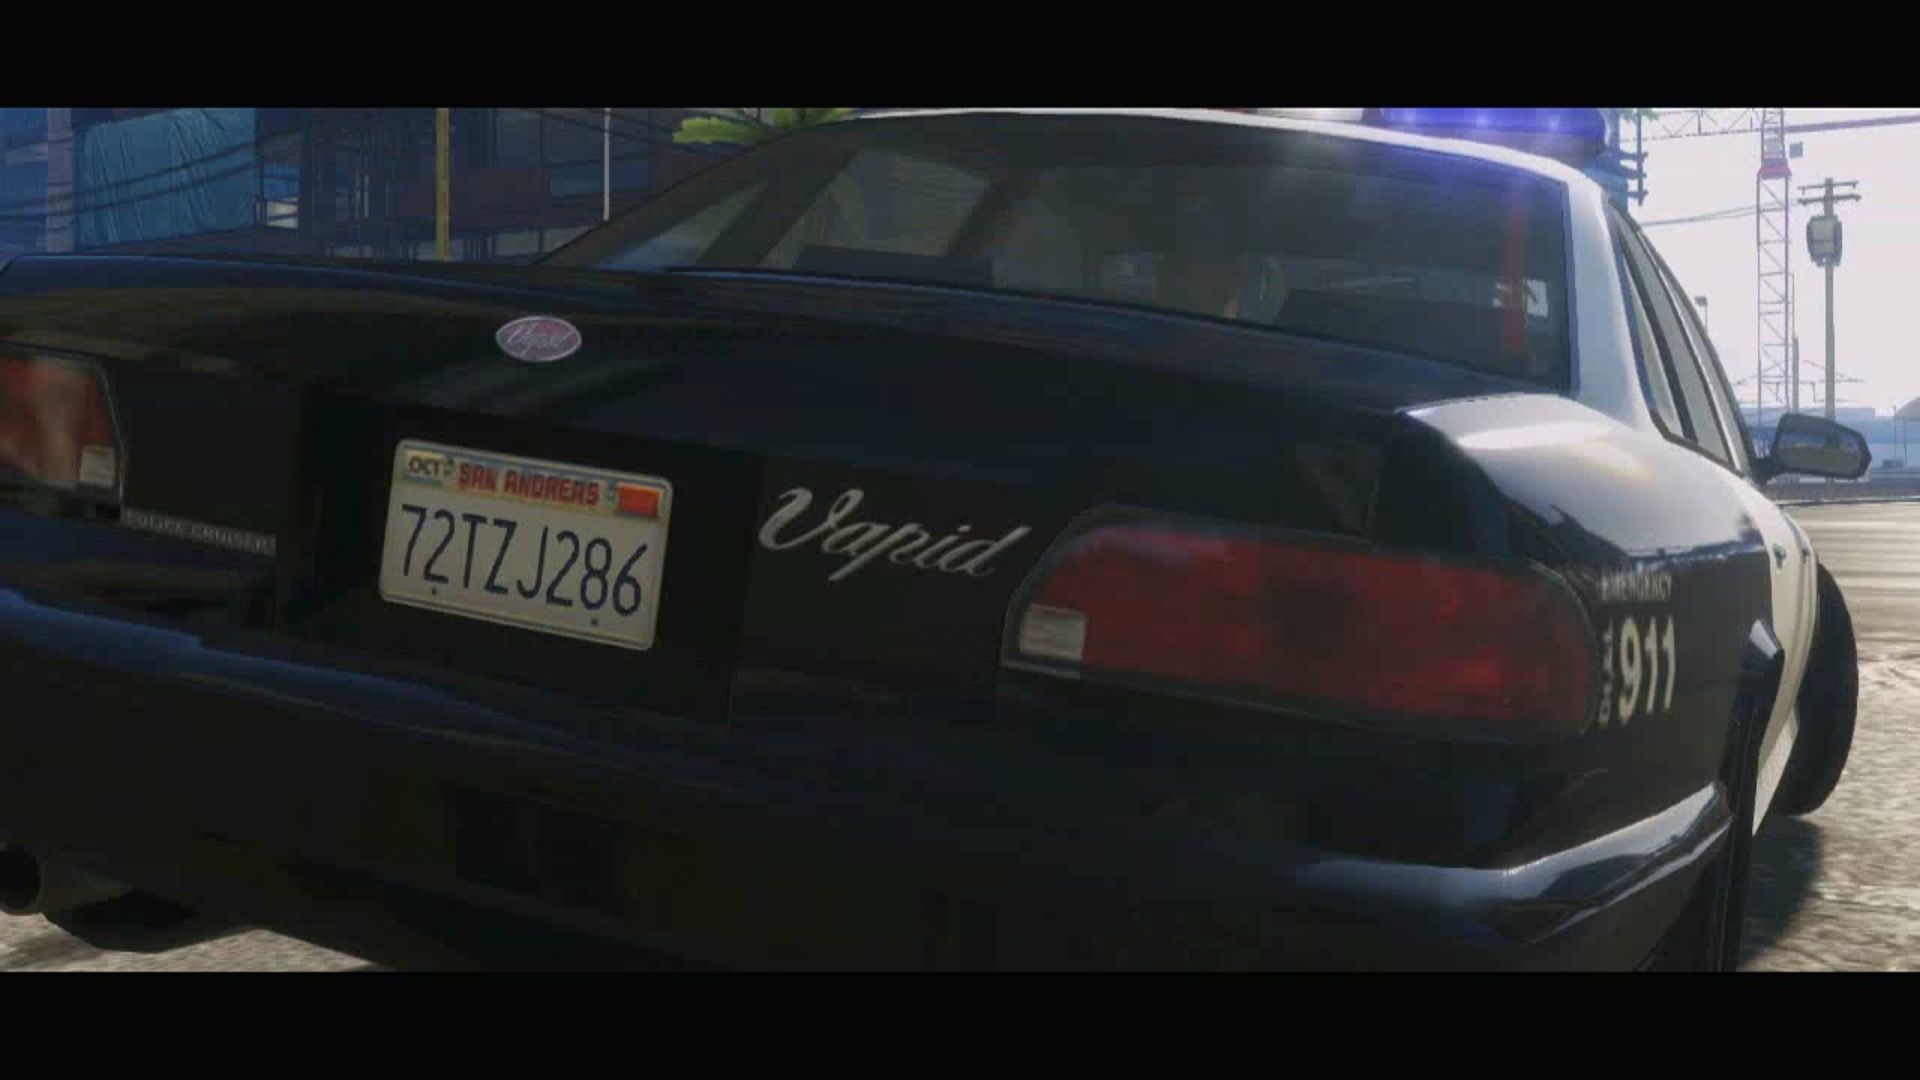 Police related trailer analysis - Grand Theft Auto V - LCPDFR.com